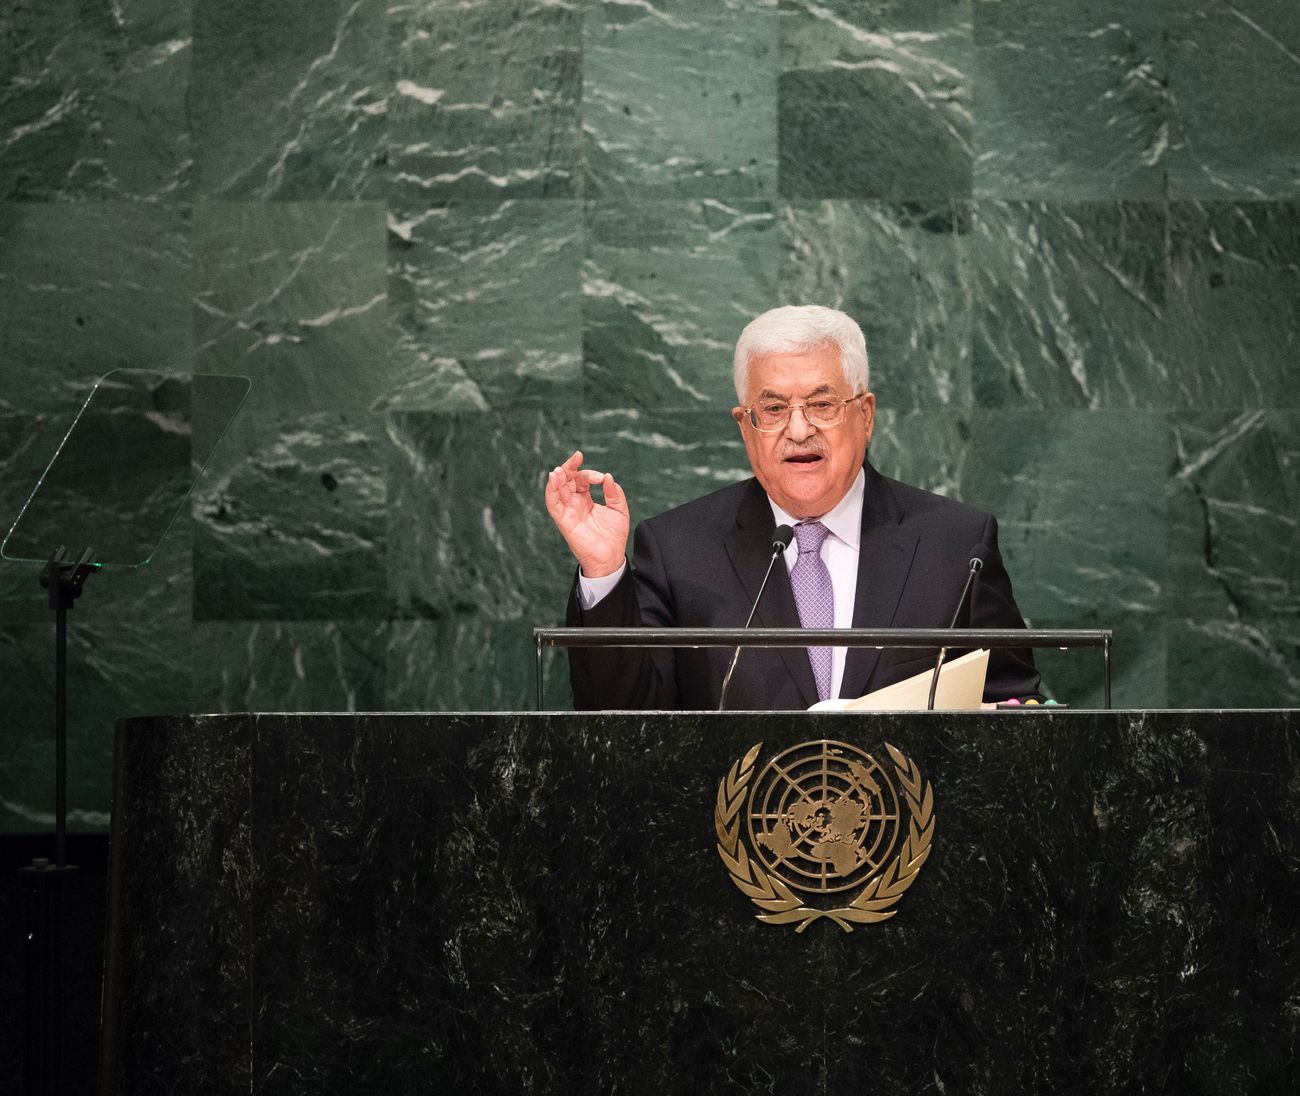 الرئيس محمود عباس الأمم المتحدة